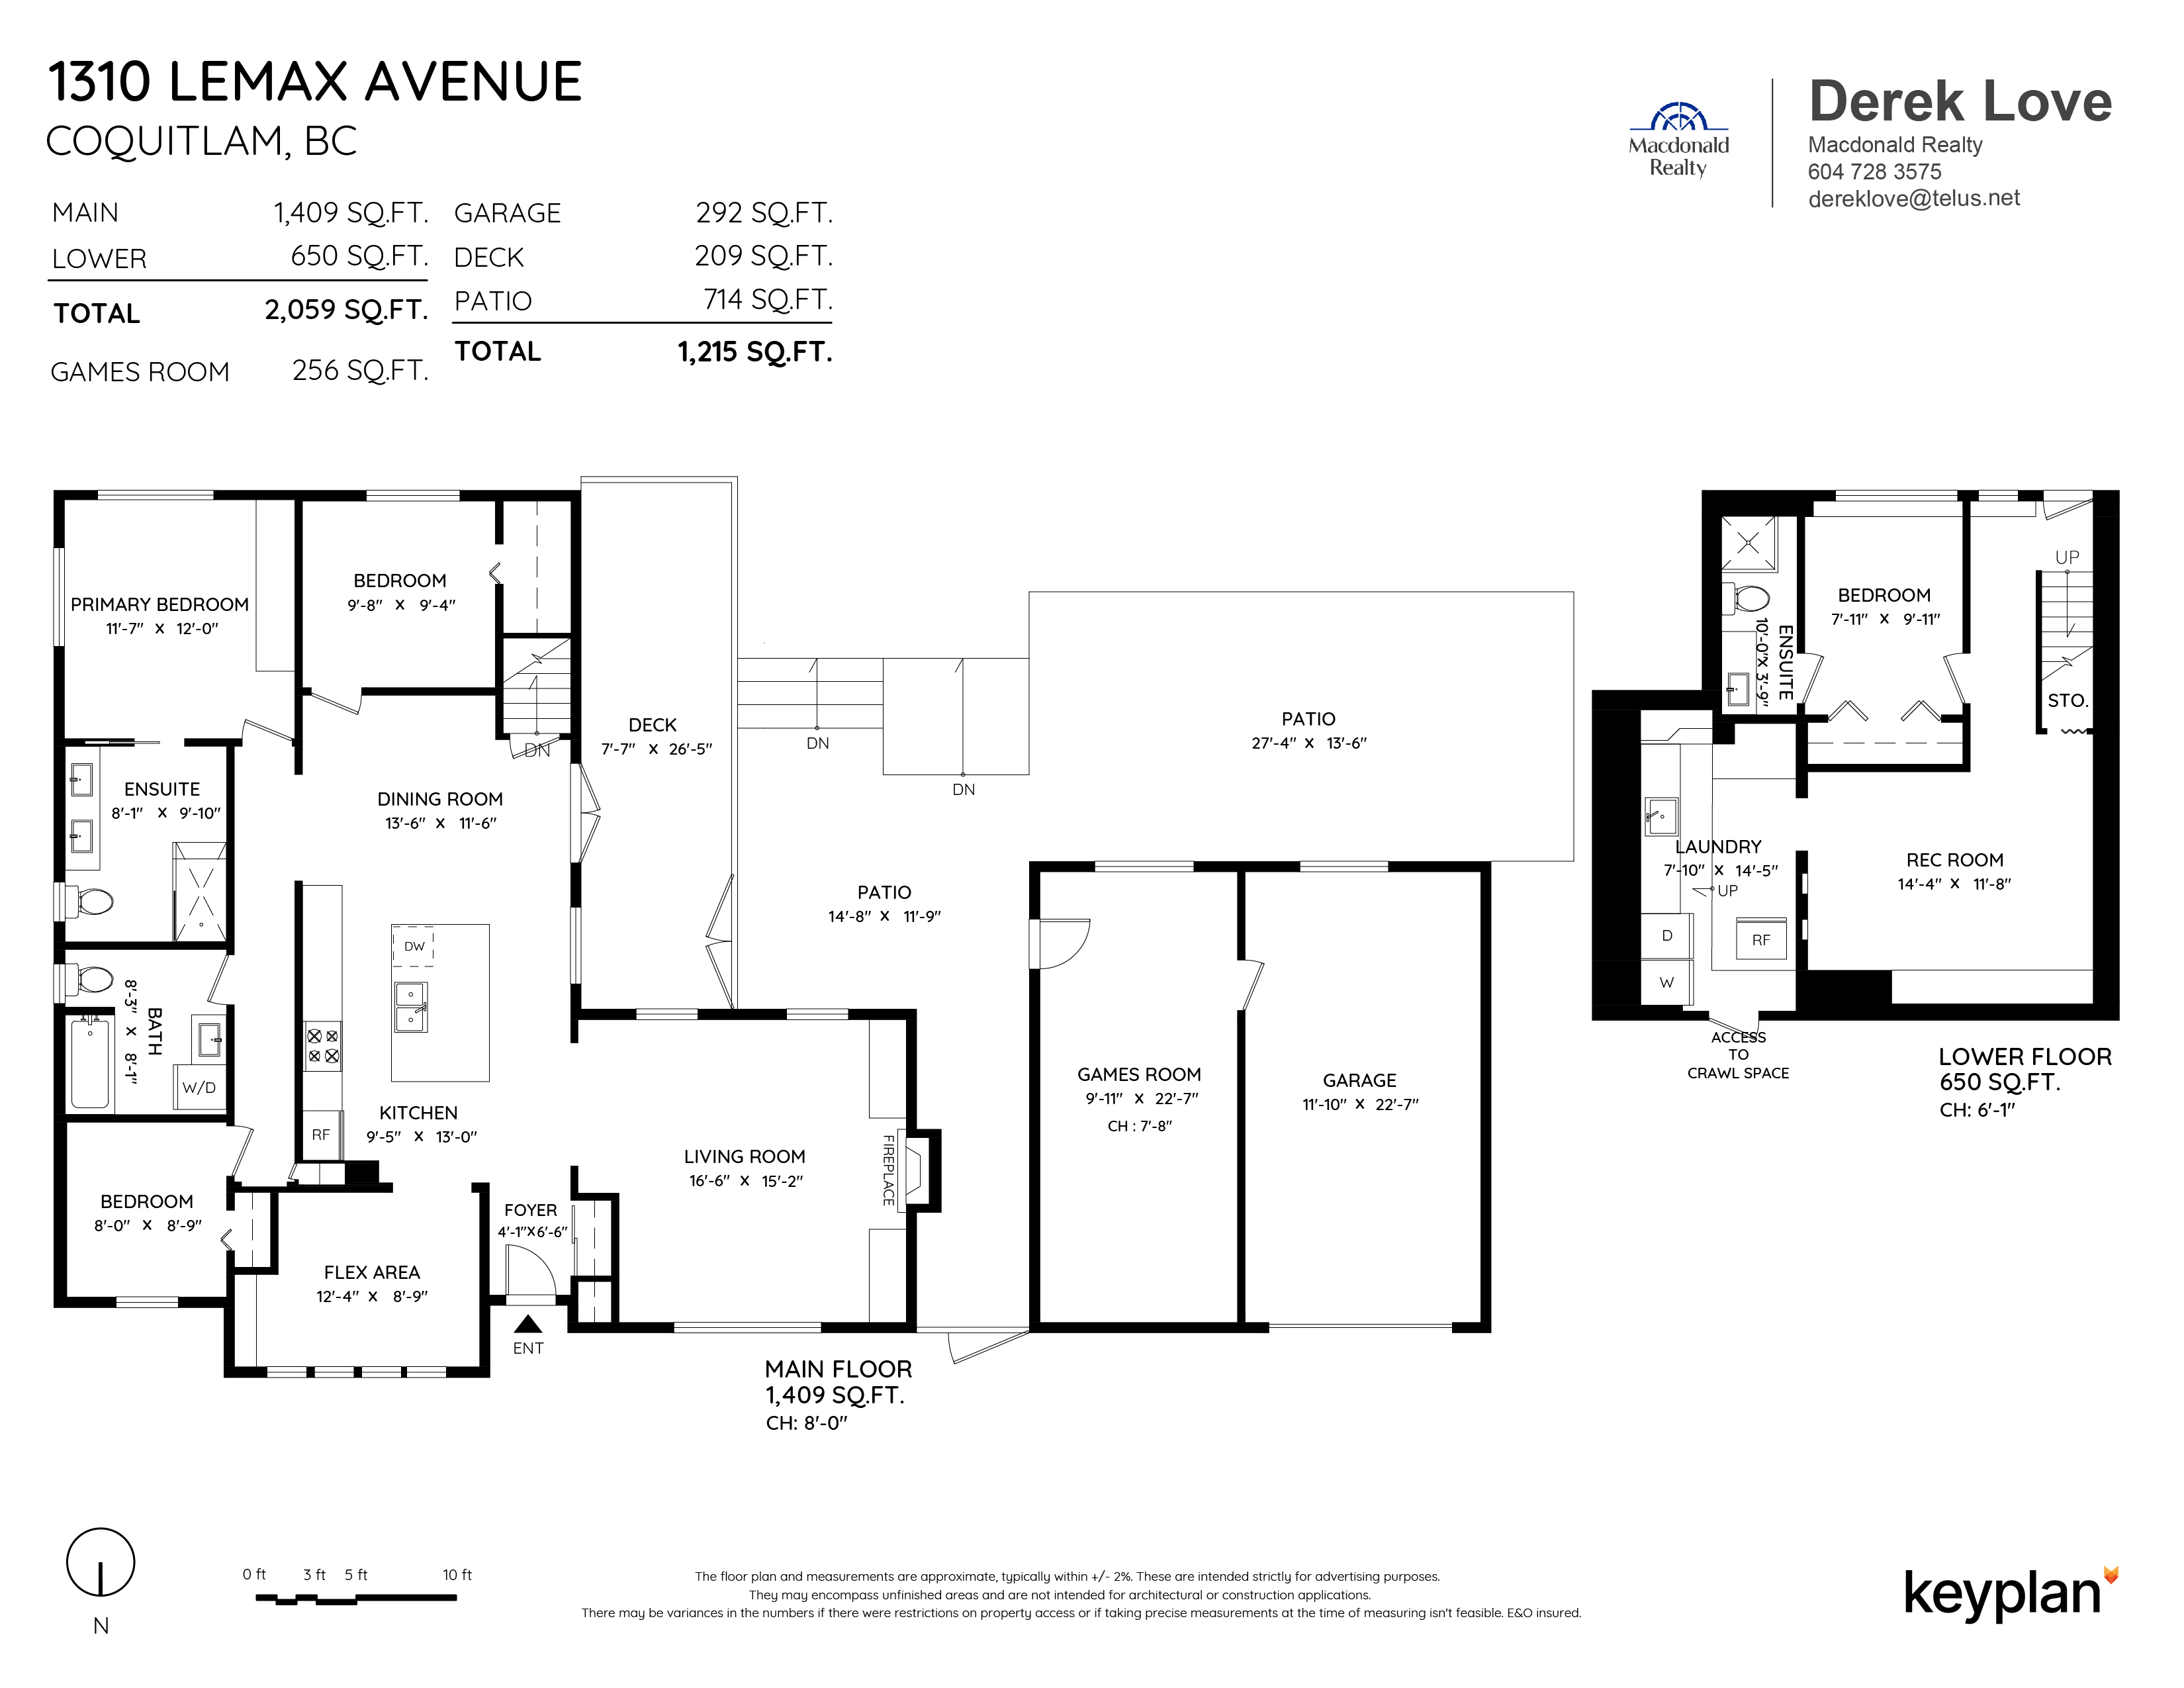 Derek & Carsten Love - 1310 Lemax Avenue, Coquitlam, BC, Canada | Floor Plan 1